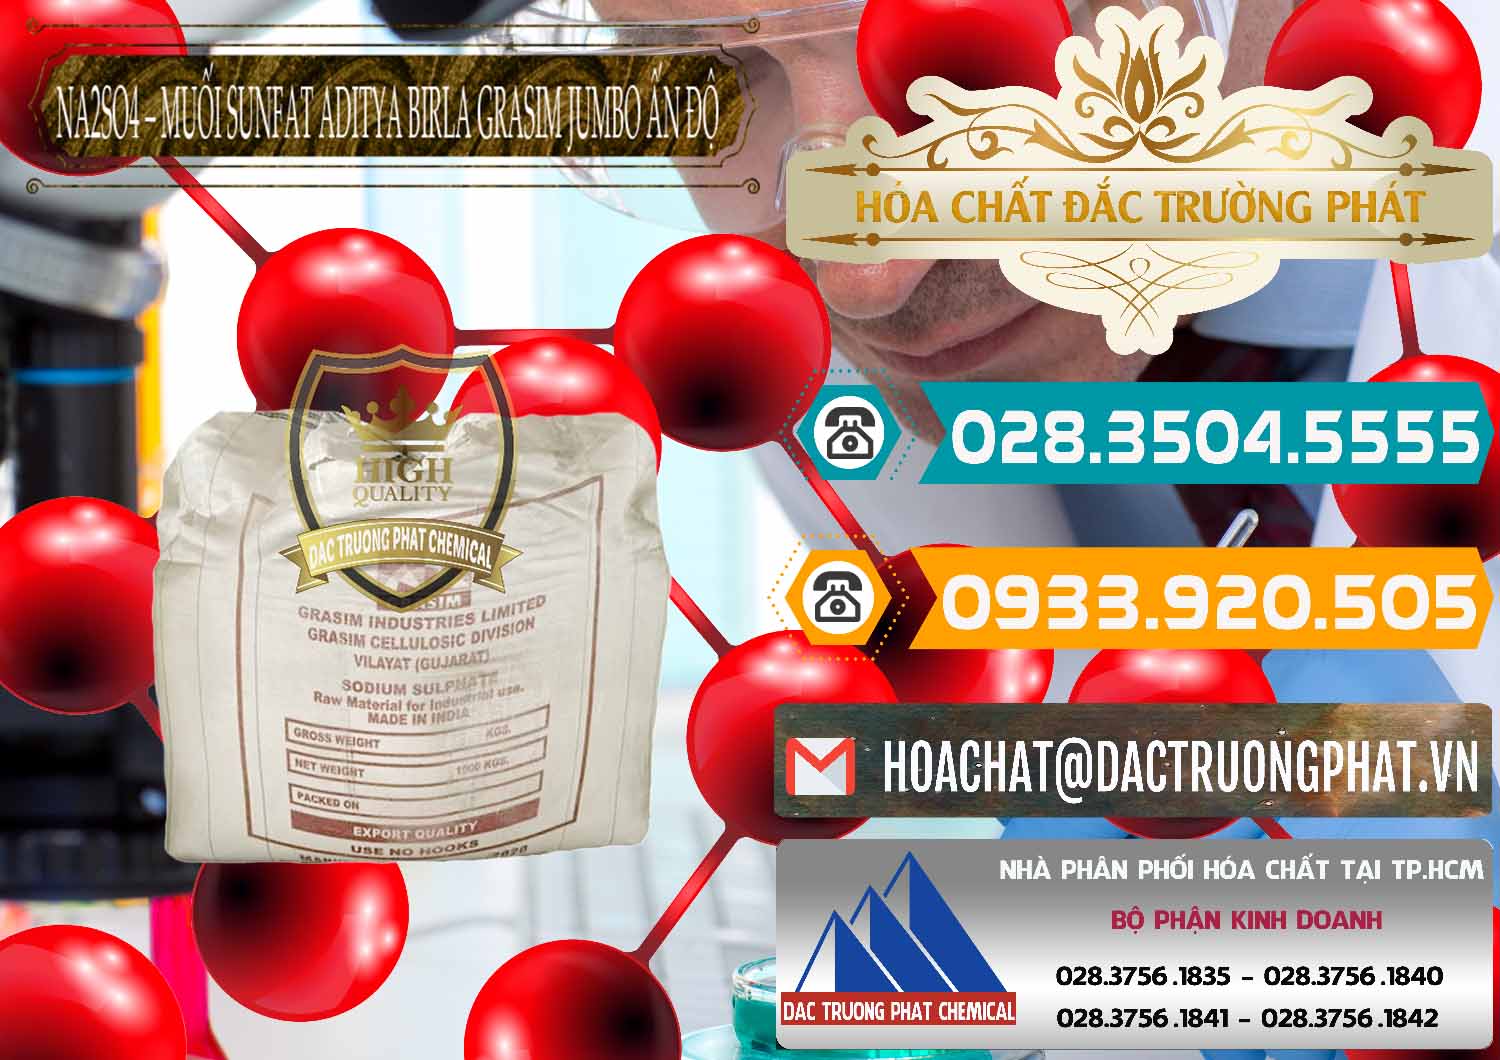 Nơi kinh doanh _ bán Sodium Sulphate - Muối Sunfat Na2SO4 Jumbo Bành Aditya Birla Grasim Ấn Độ India - 0357 - Nhà nhập khẩu _ phân phối hóa chất tại TP.HCM - congtyhoachat.vn